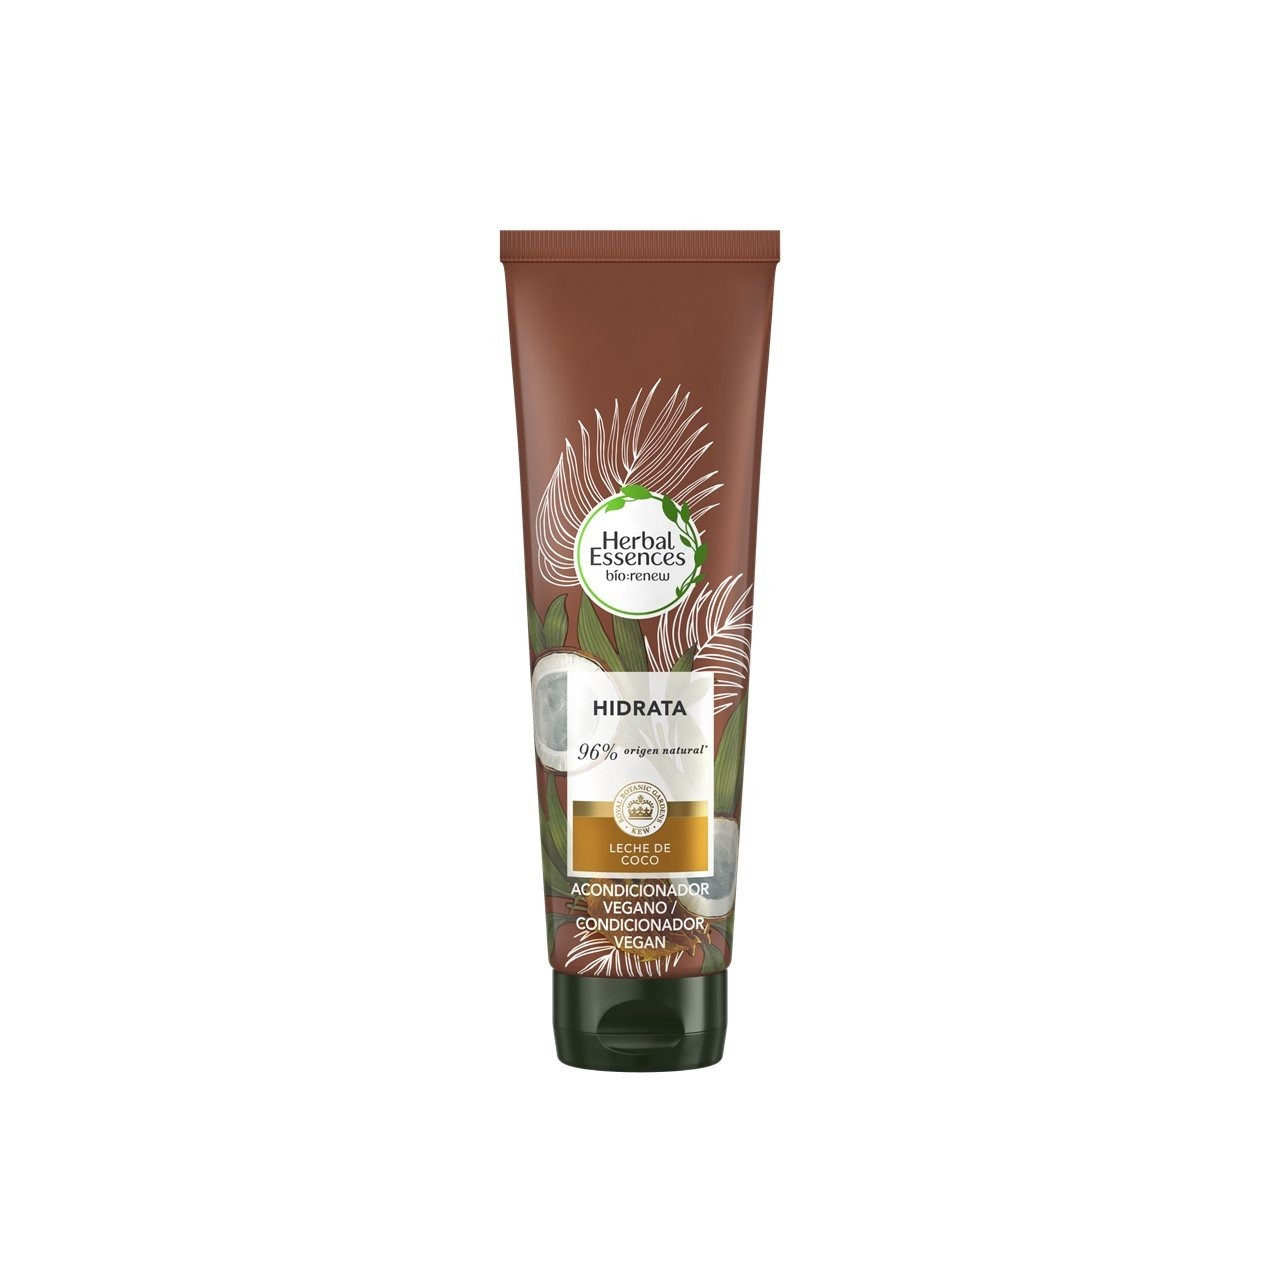 Herbal Essences Bio Renew Hydrate Coconut Milk Shampoo